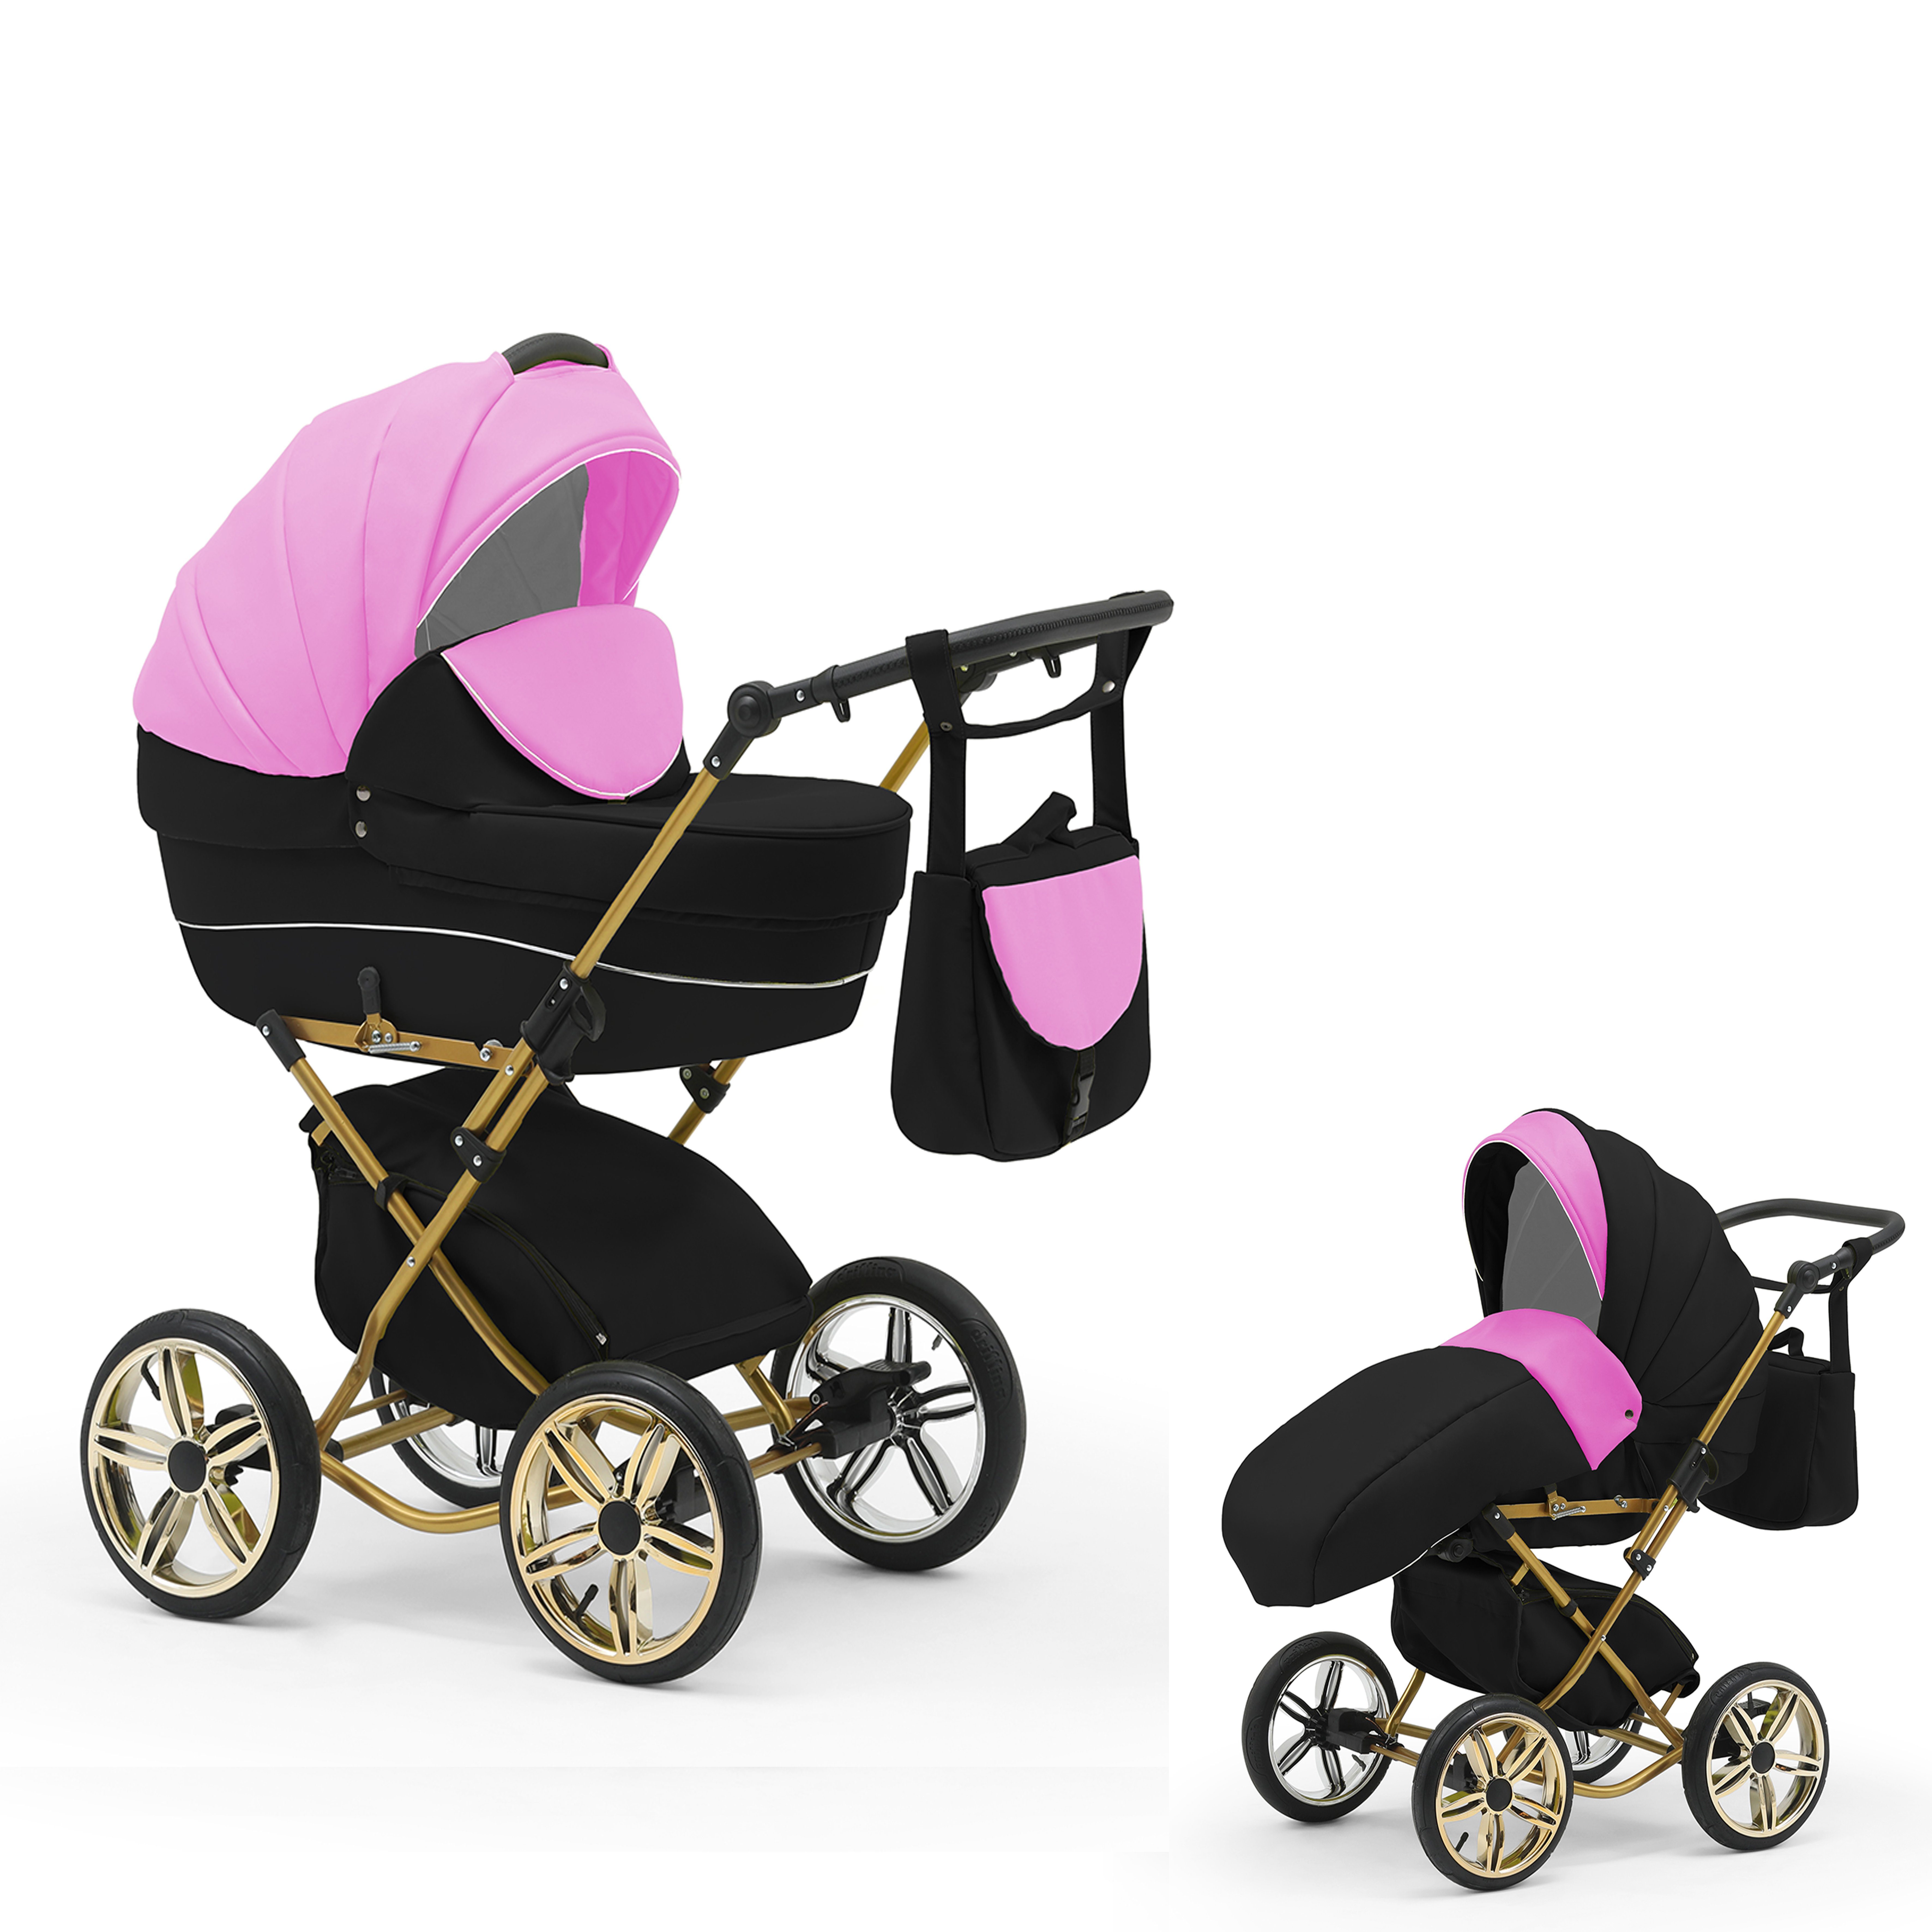 30 bis - Kombi-Kinderwagen 2 4 babies-on-wheels in Pink-Schwarz - Sorento in Designs Geburt von Jahre Teile 1 11